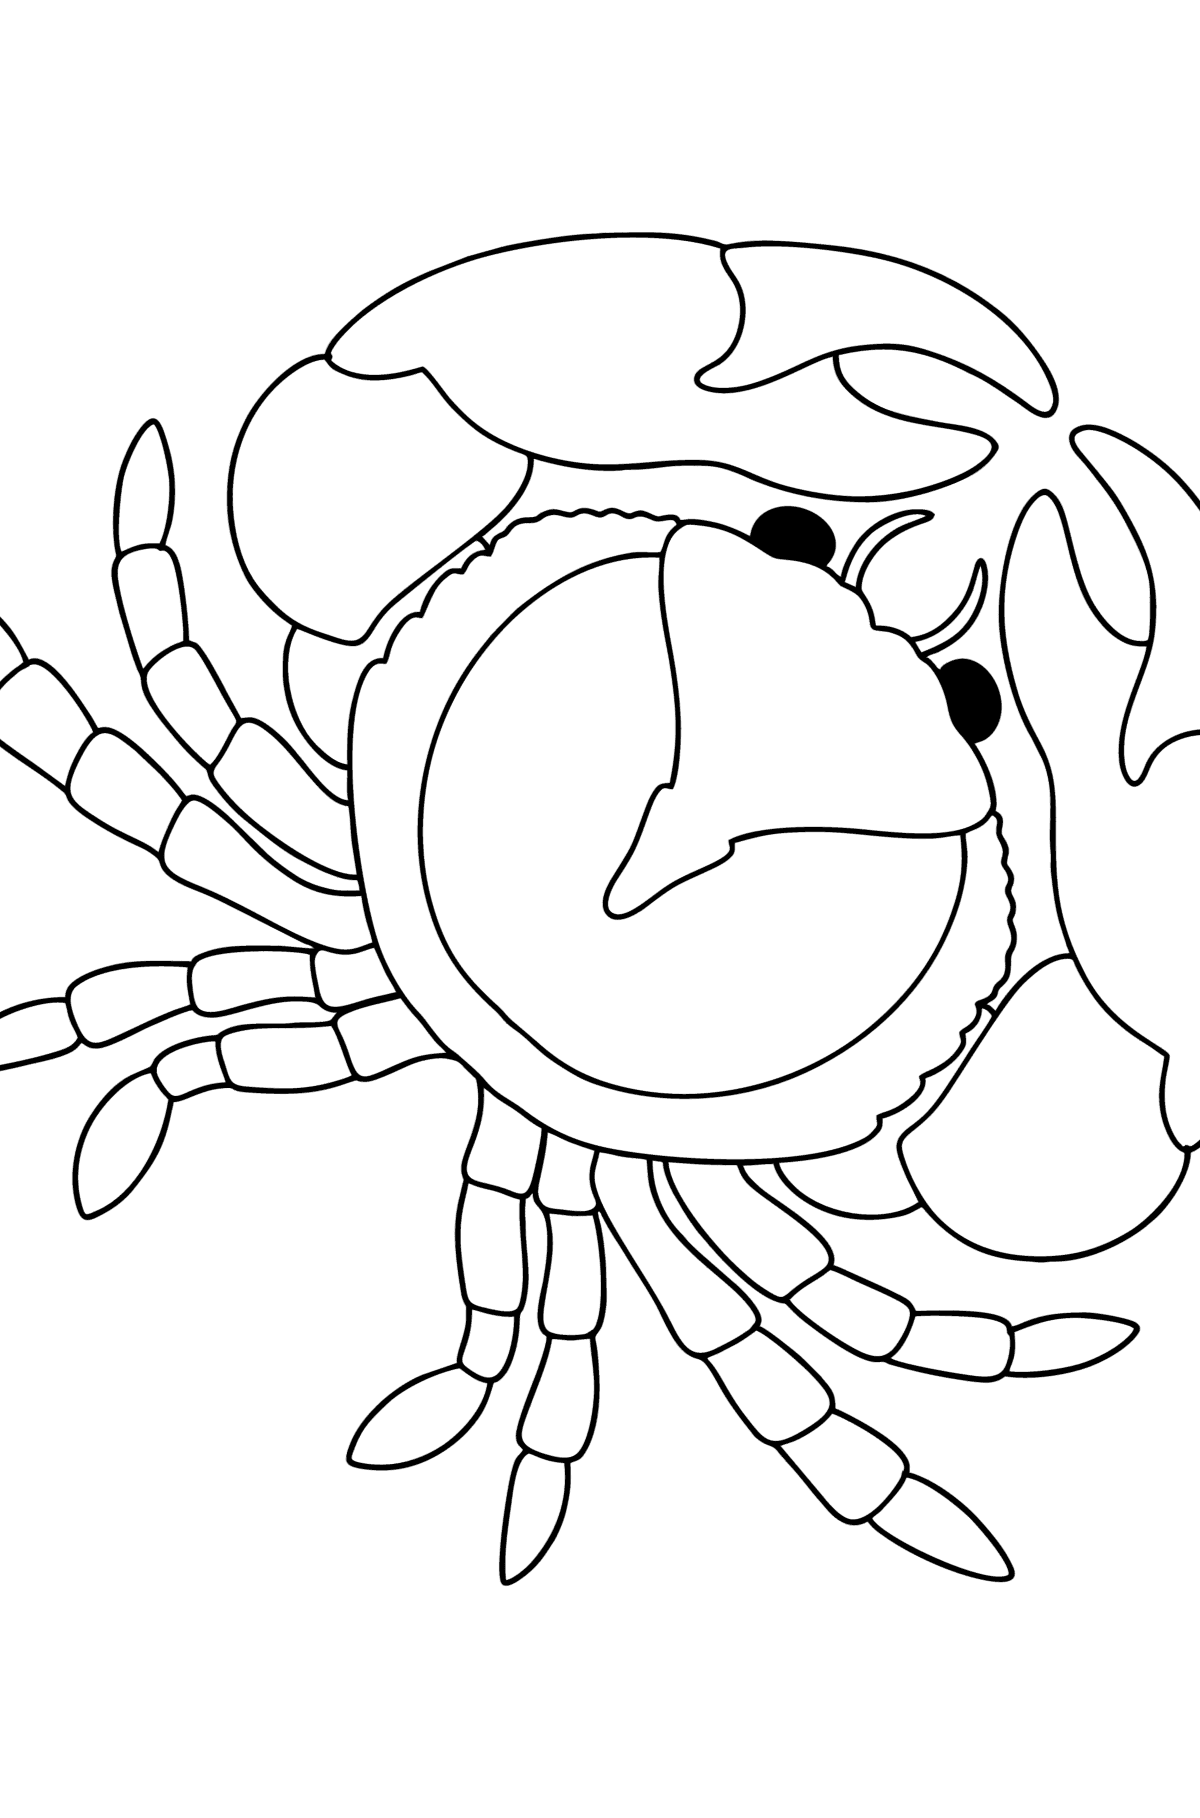 Desenho de Caranguejo do mar para colorir - Imagens para Colorir para Crianças